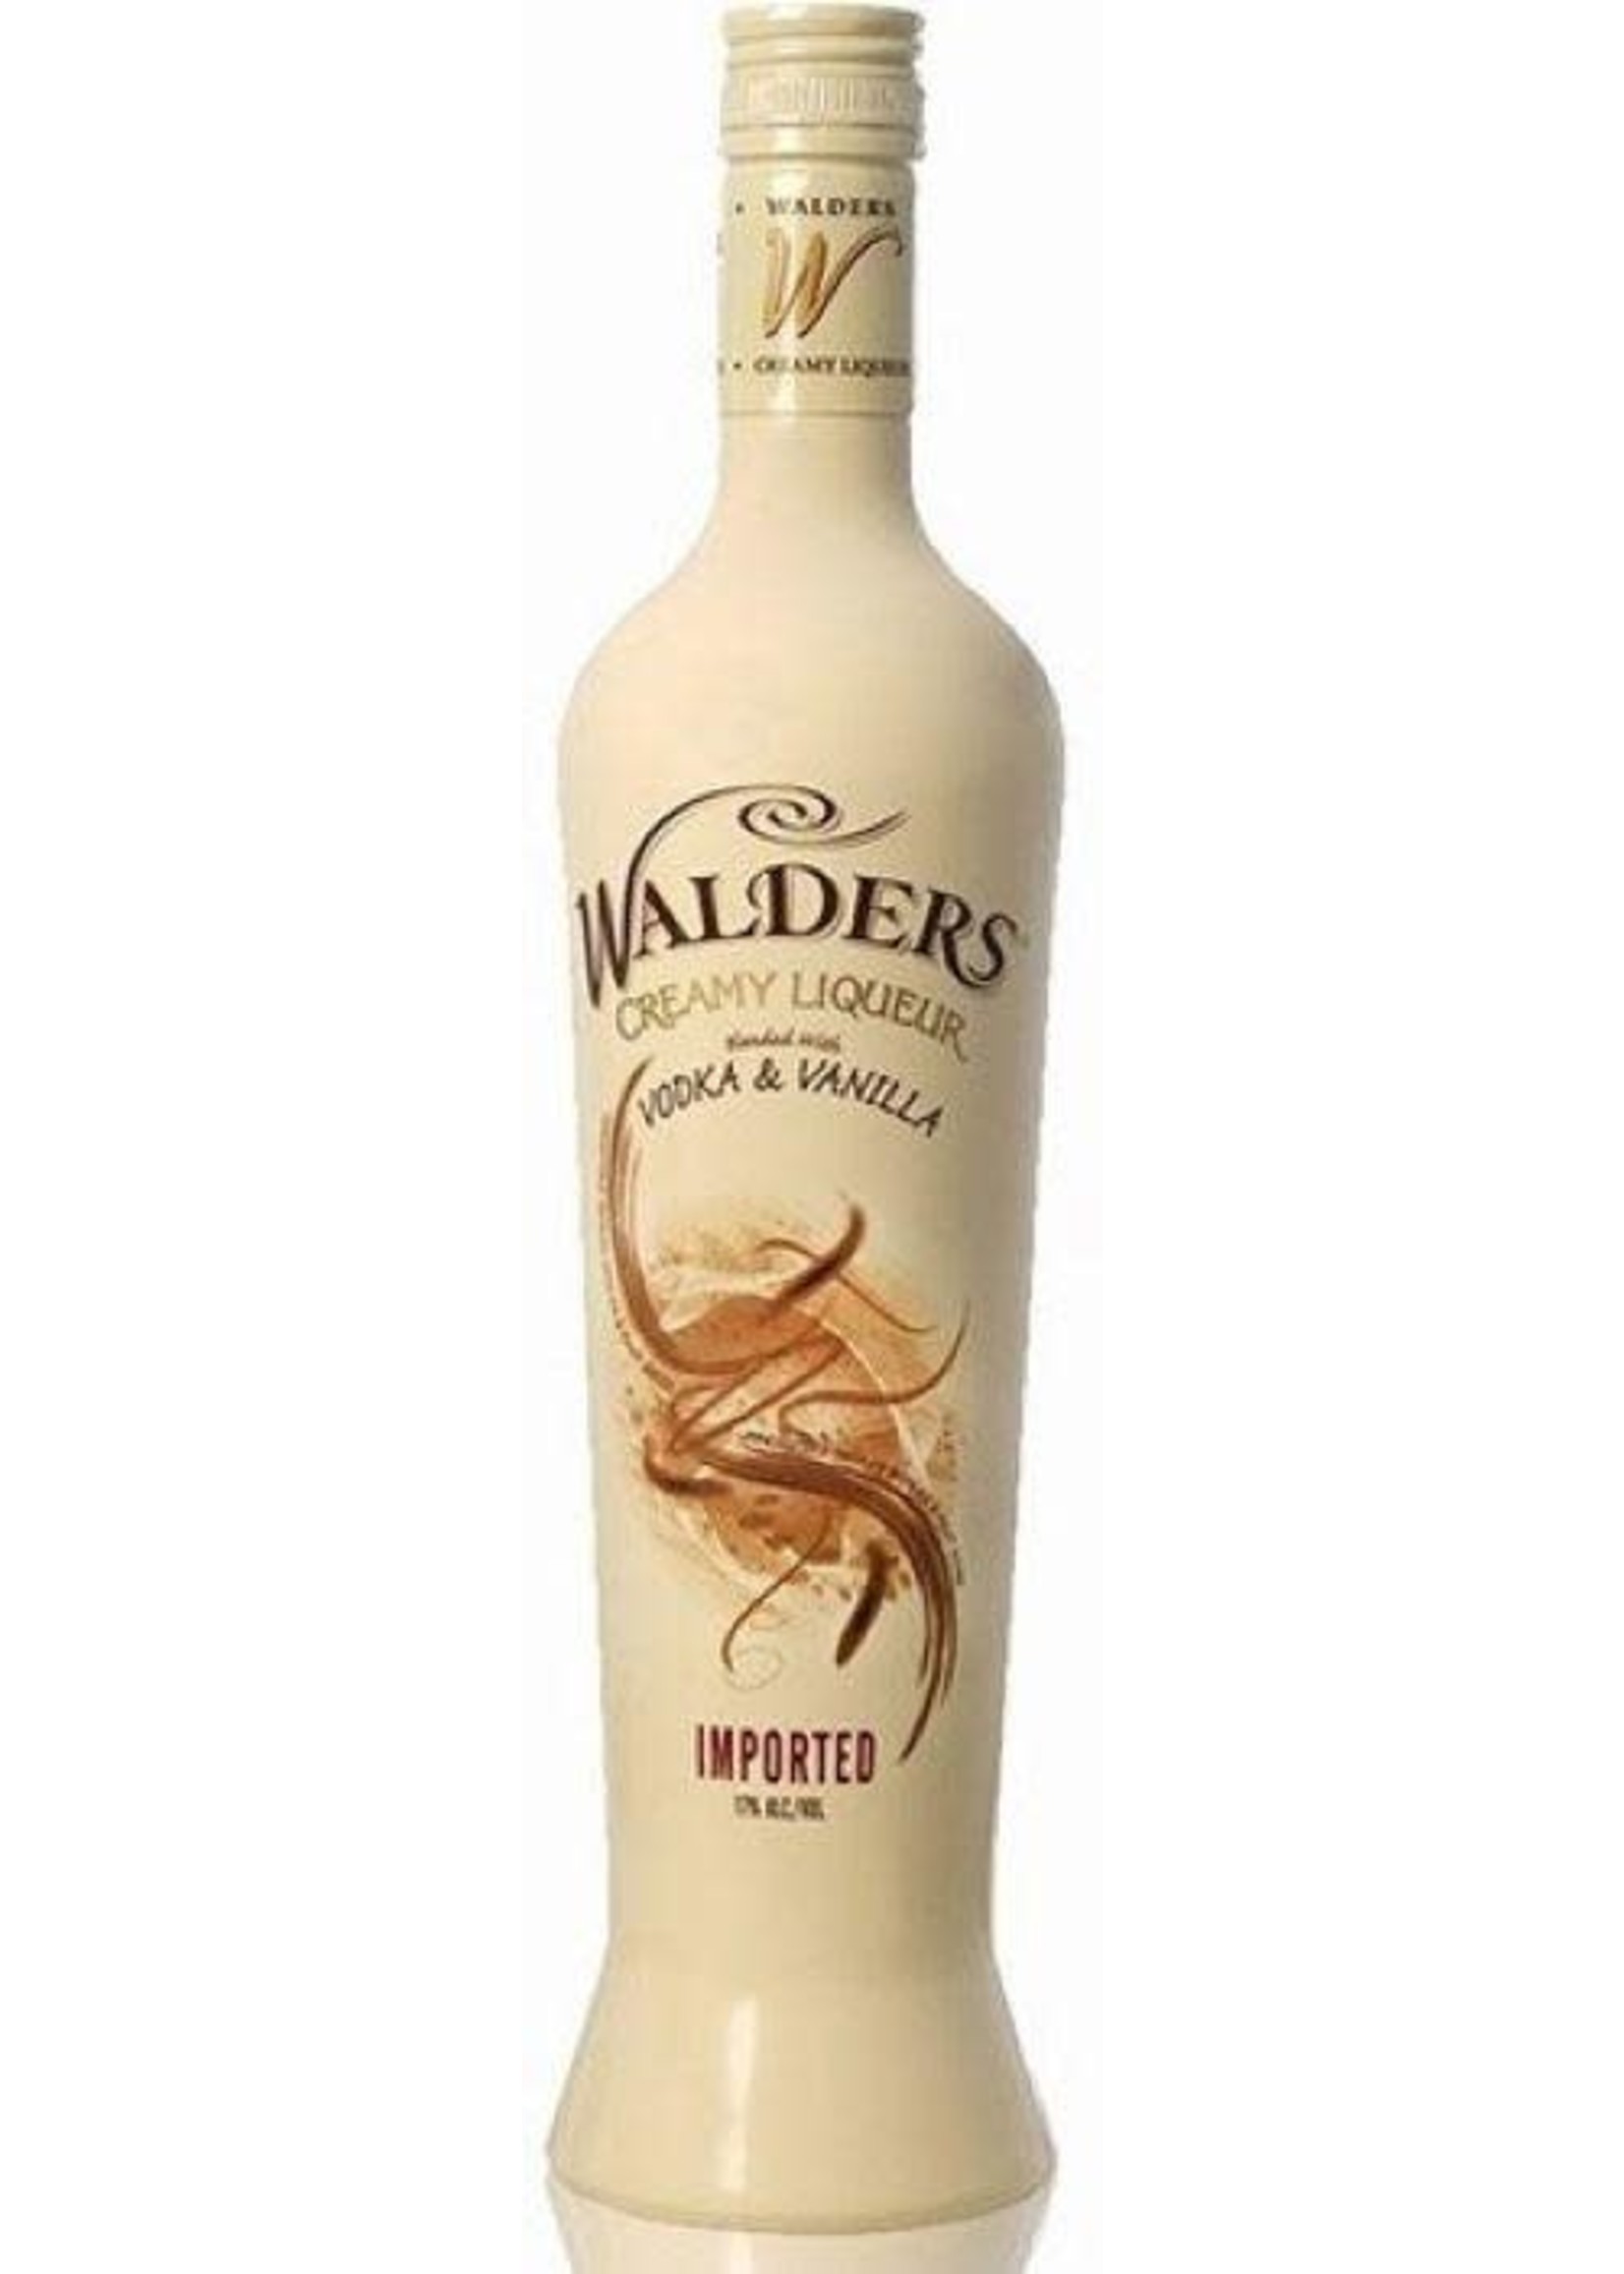 Walders Walders / Vodka & Vanilla Creamy Liqueur / 750mL